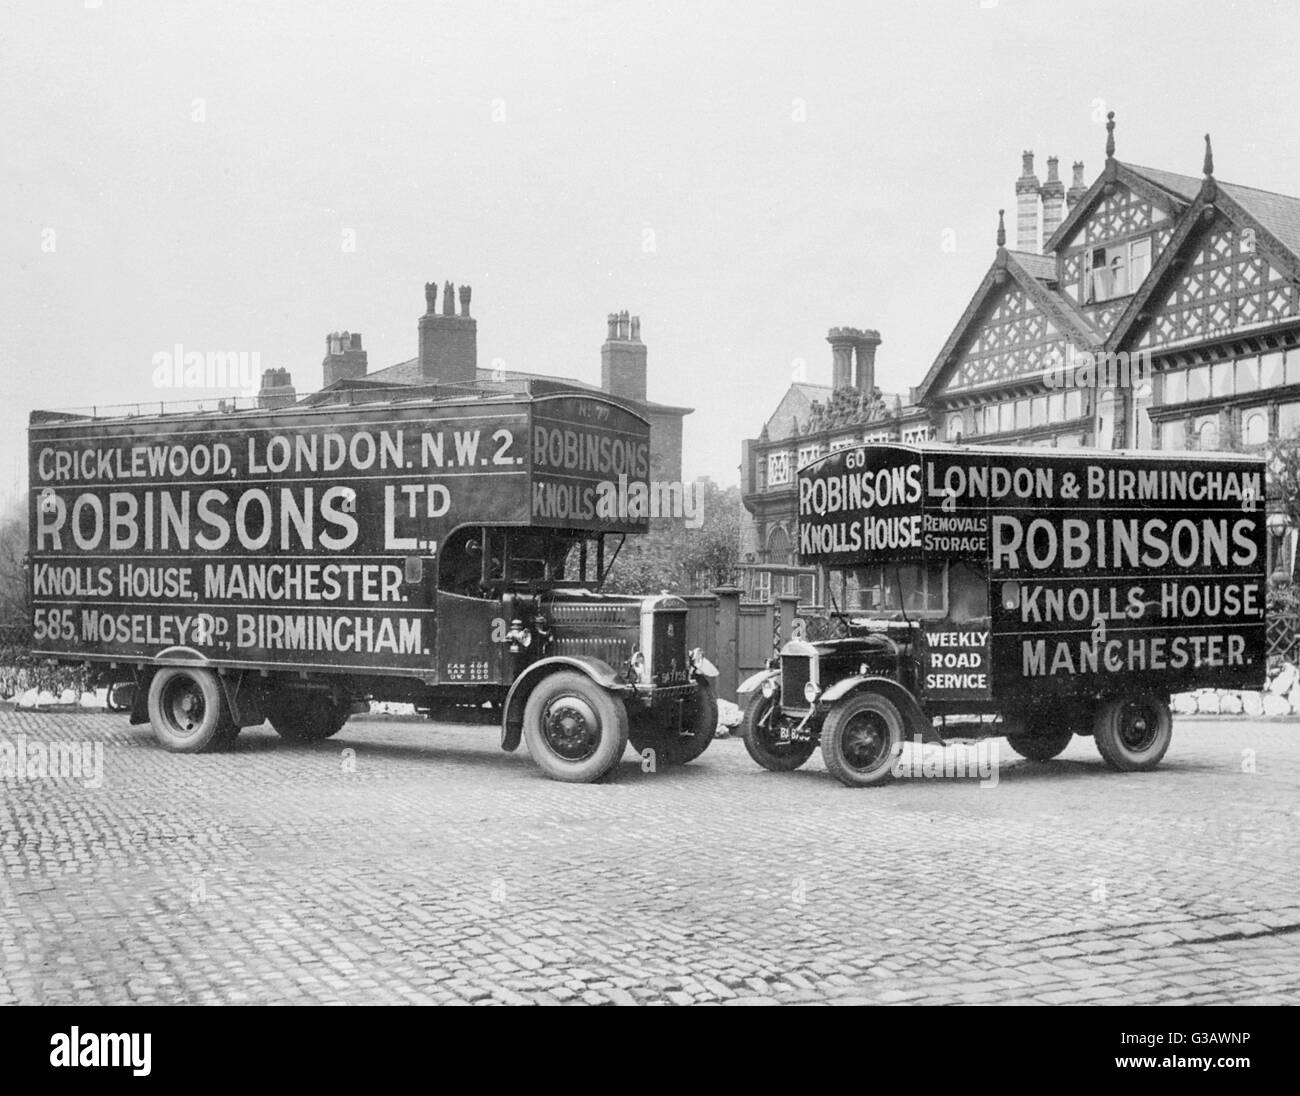 Due Robinsons Ltd distacco furgoni, Cricklewood, Londra NW, anche a casa Poggi, Manchester e Moseley Road, Birmingham, offrendo un settimanale di servizio su strada. Data: circa 1920s Foto Stock